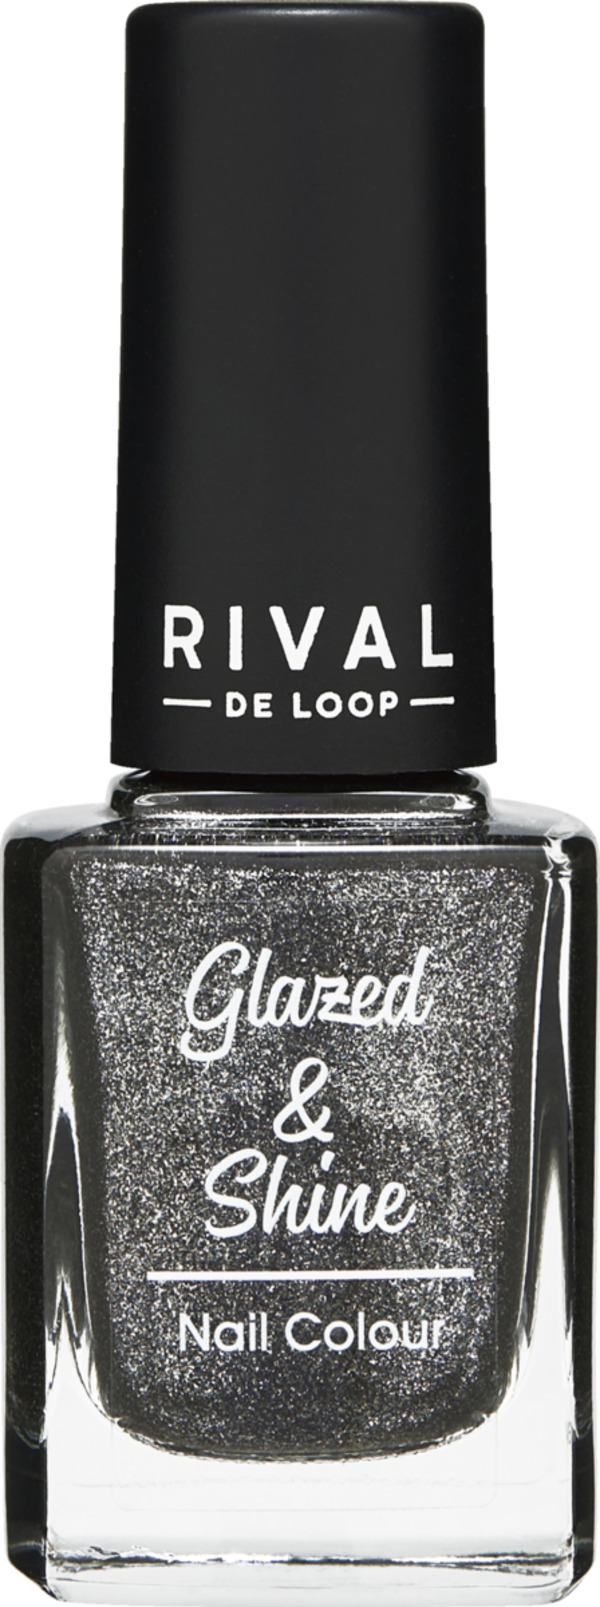 Bild 1 von RIVAL DE LOOP Glazed & Shine 10 Nail Colour